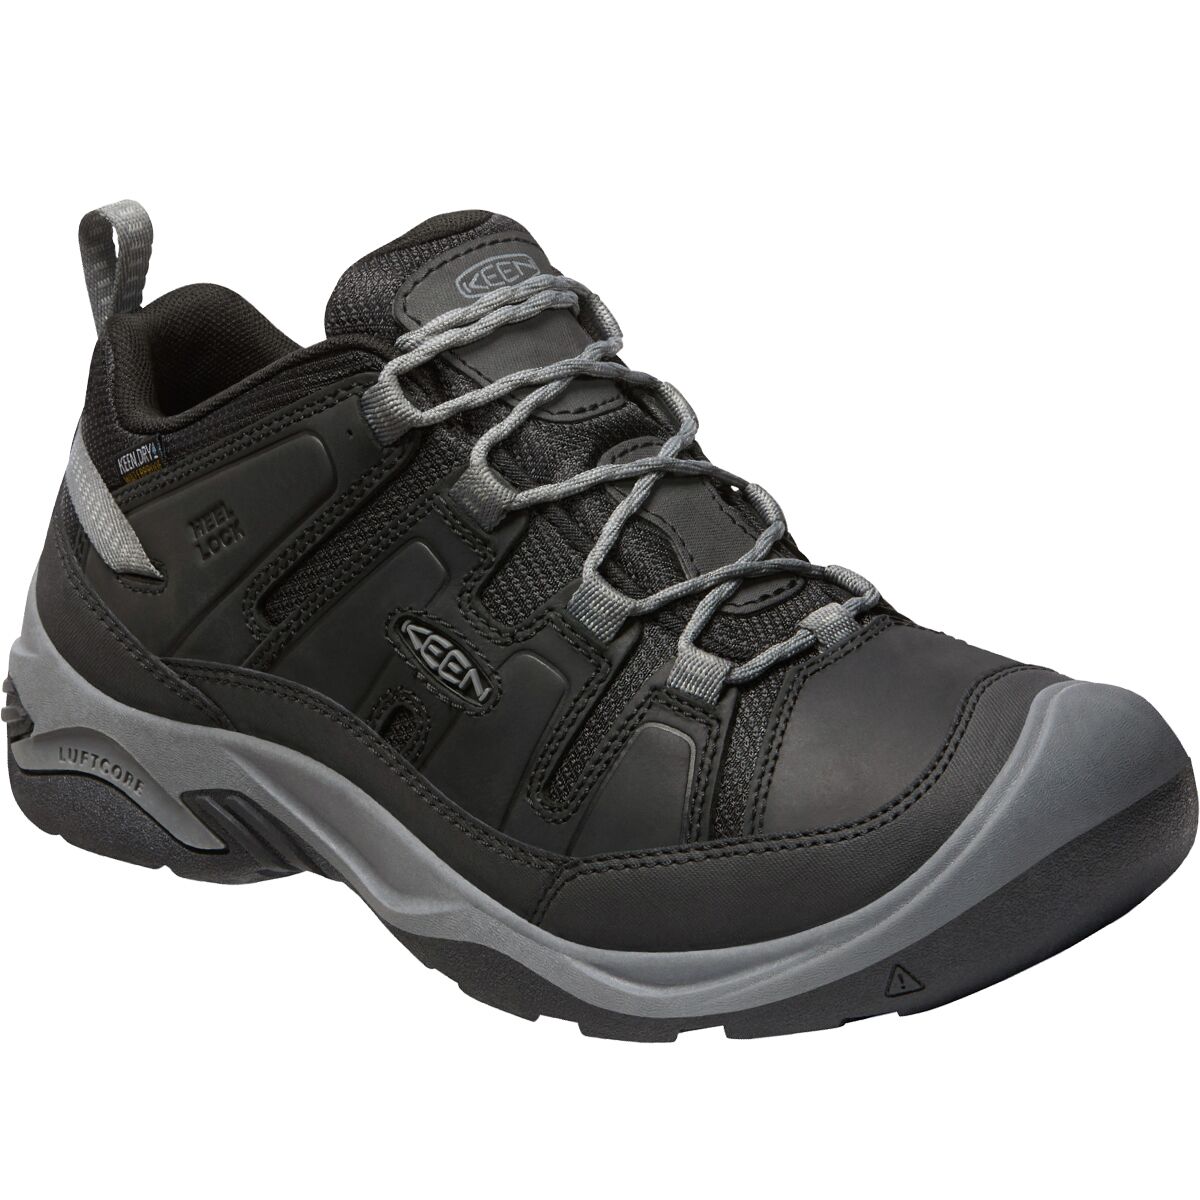 KEEN Circadia Waterproof Hiking Shoe - Men's - Footwear